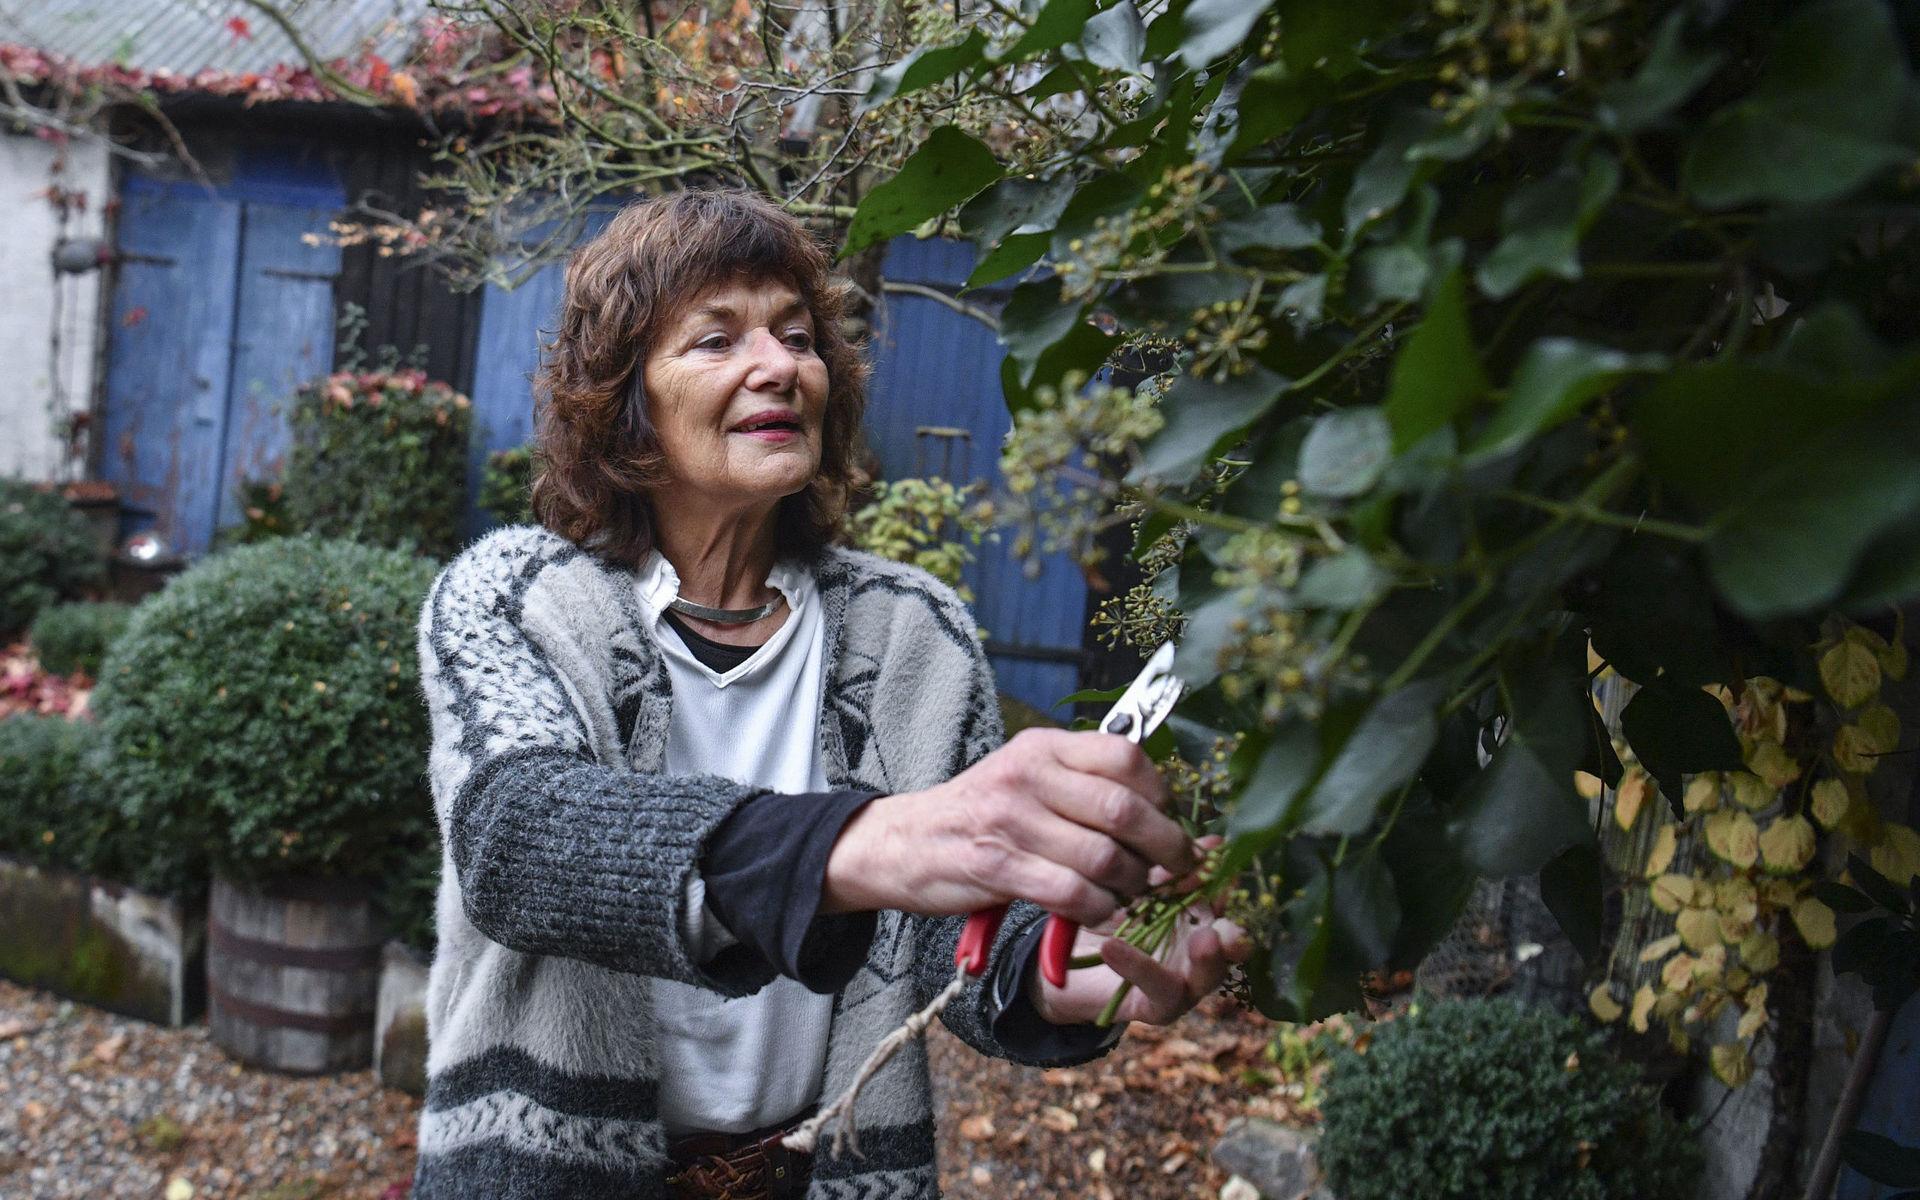 För Heidi Palmgren är trädgårdsarbete ett sätt leva. Hon gillar att ha grundstruktur men tycker också att man ska anpassa sig efter växterna.